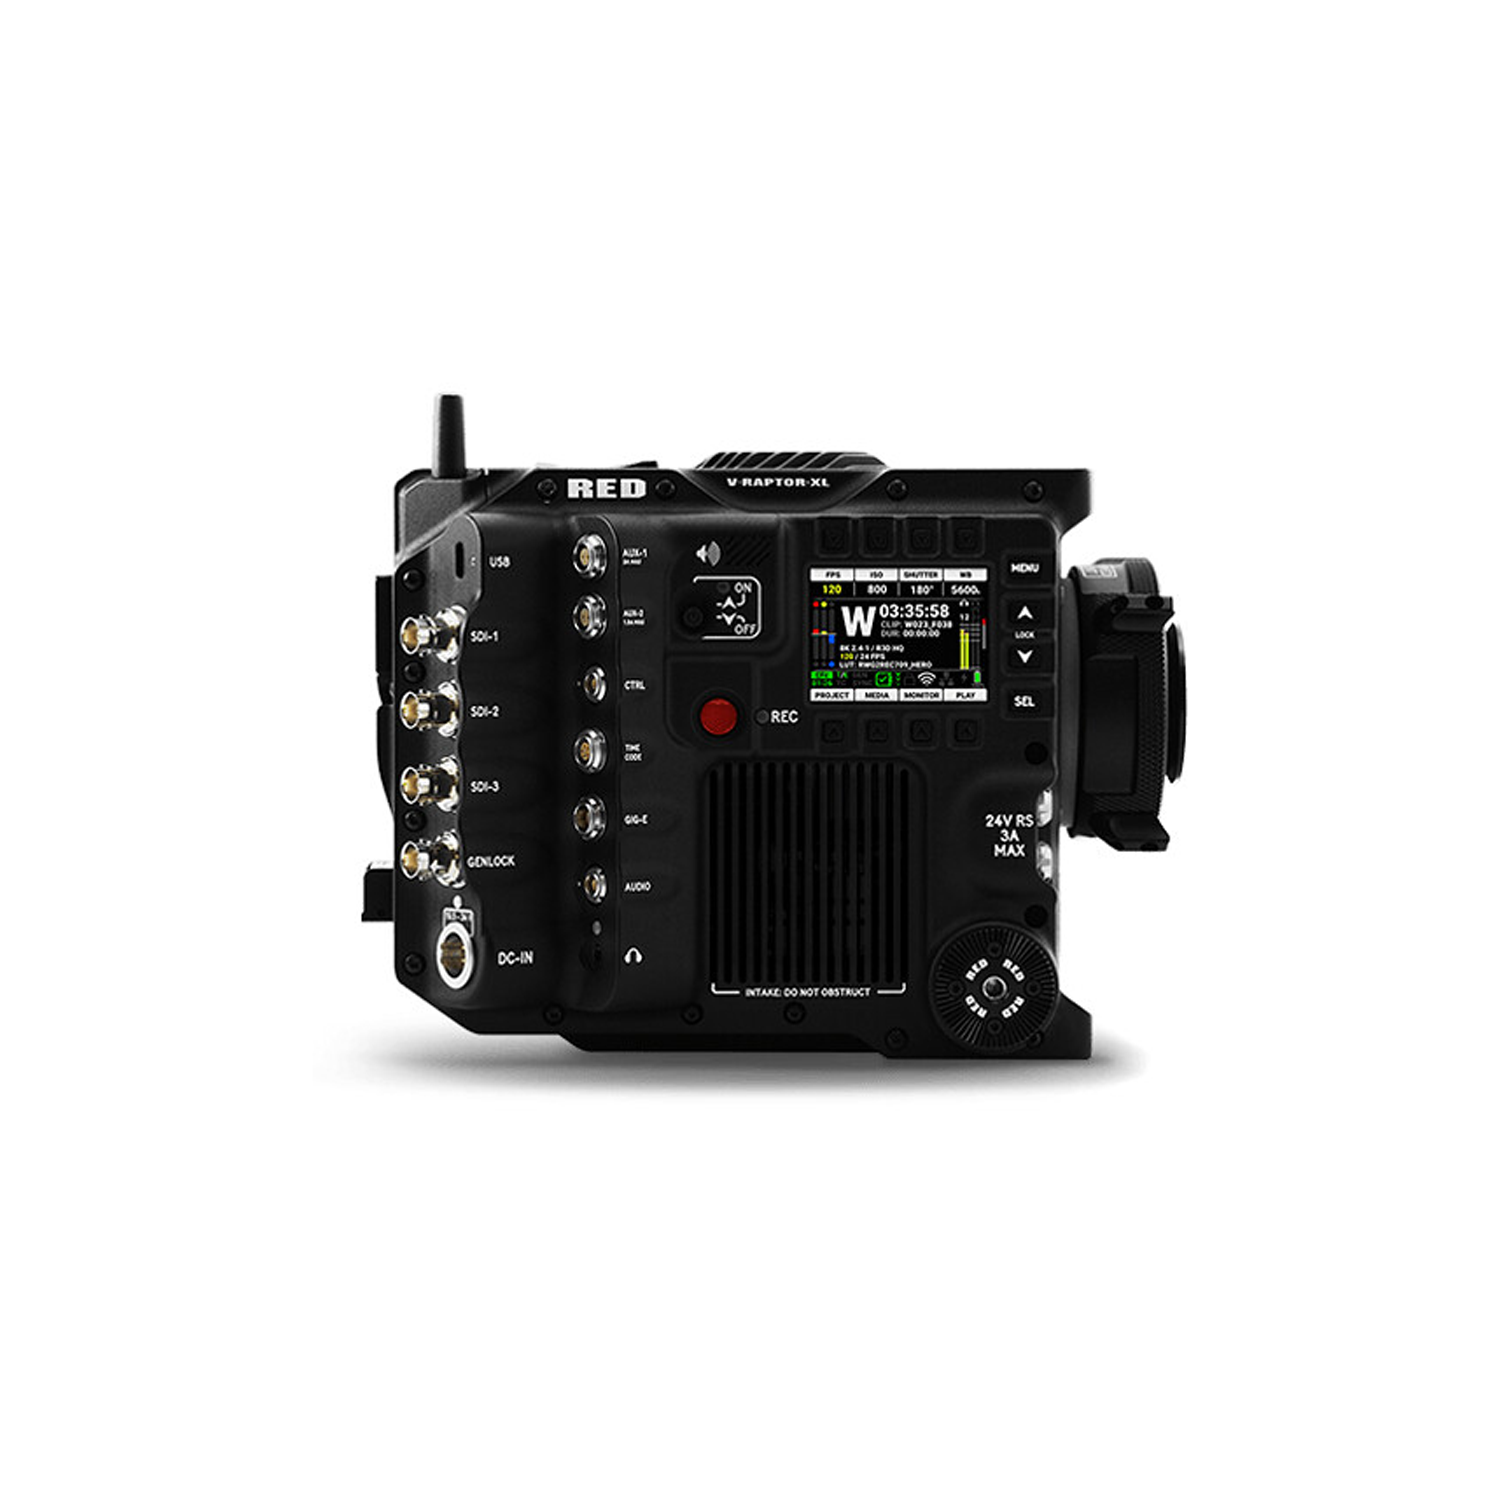 RED Digital Cinema V-Raptor XL 8k Vv + 6k S35 Sensor Camera - Gold Mount